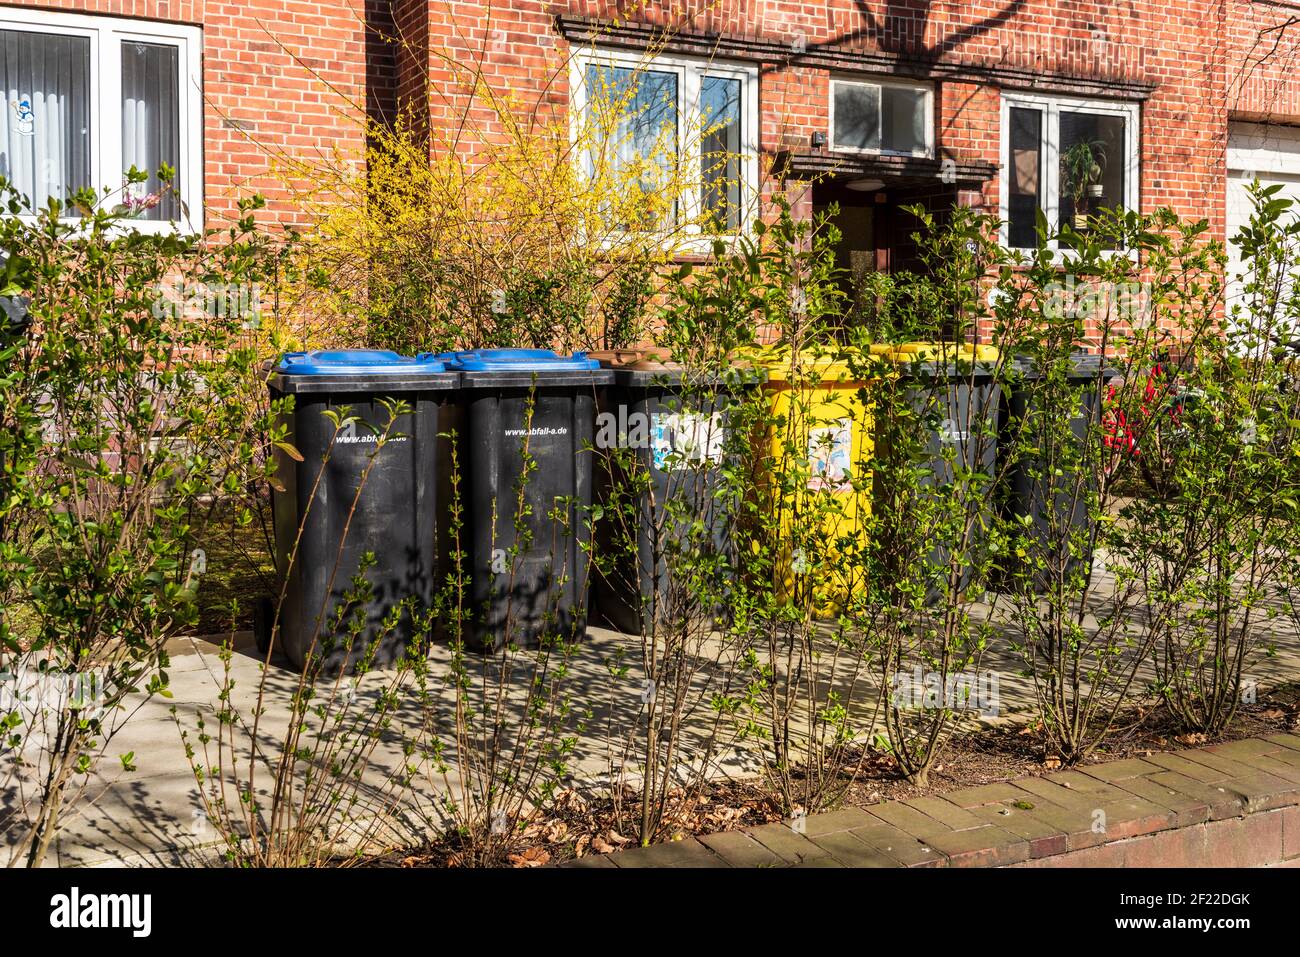 Hausmülltonnen für die Mülltrennung eines Wohnhauses Stock Photo